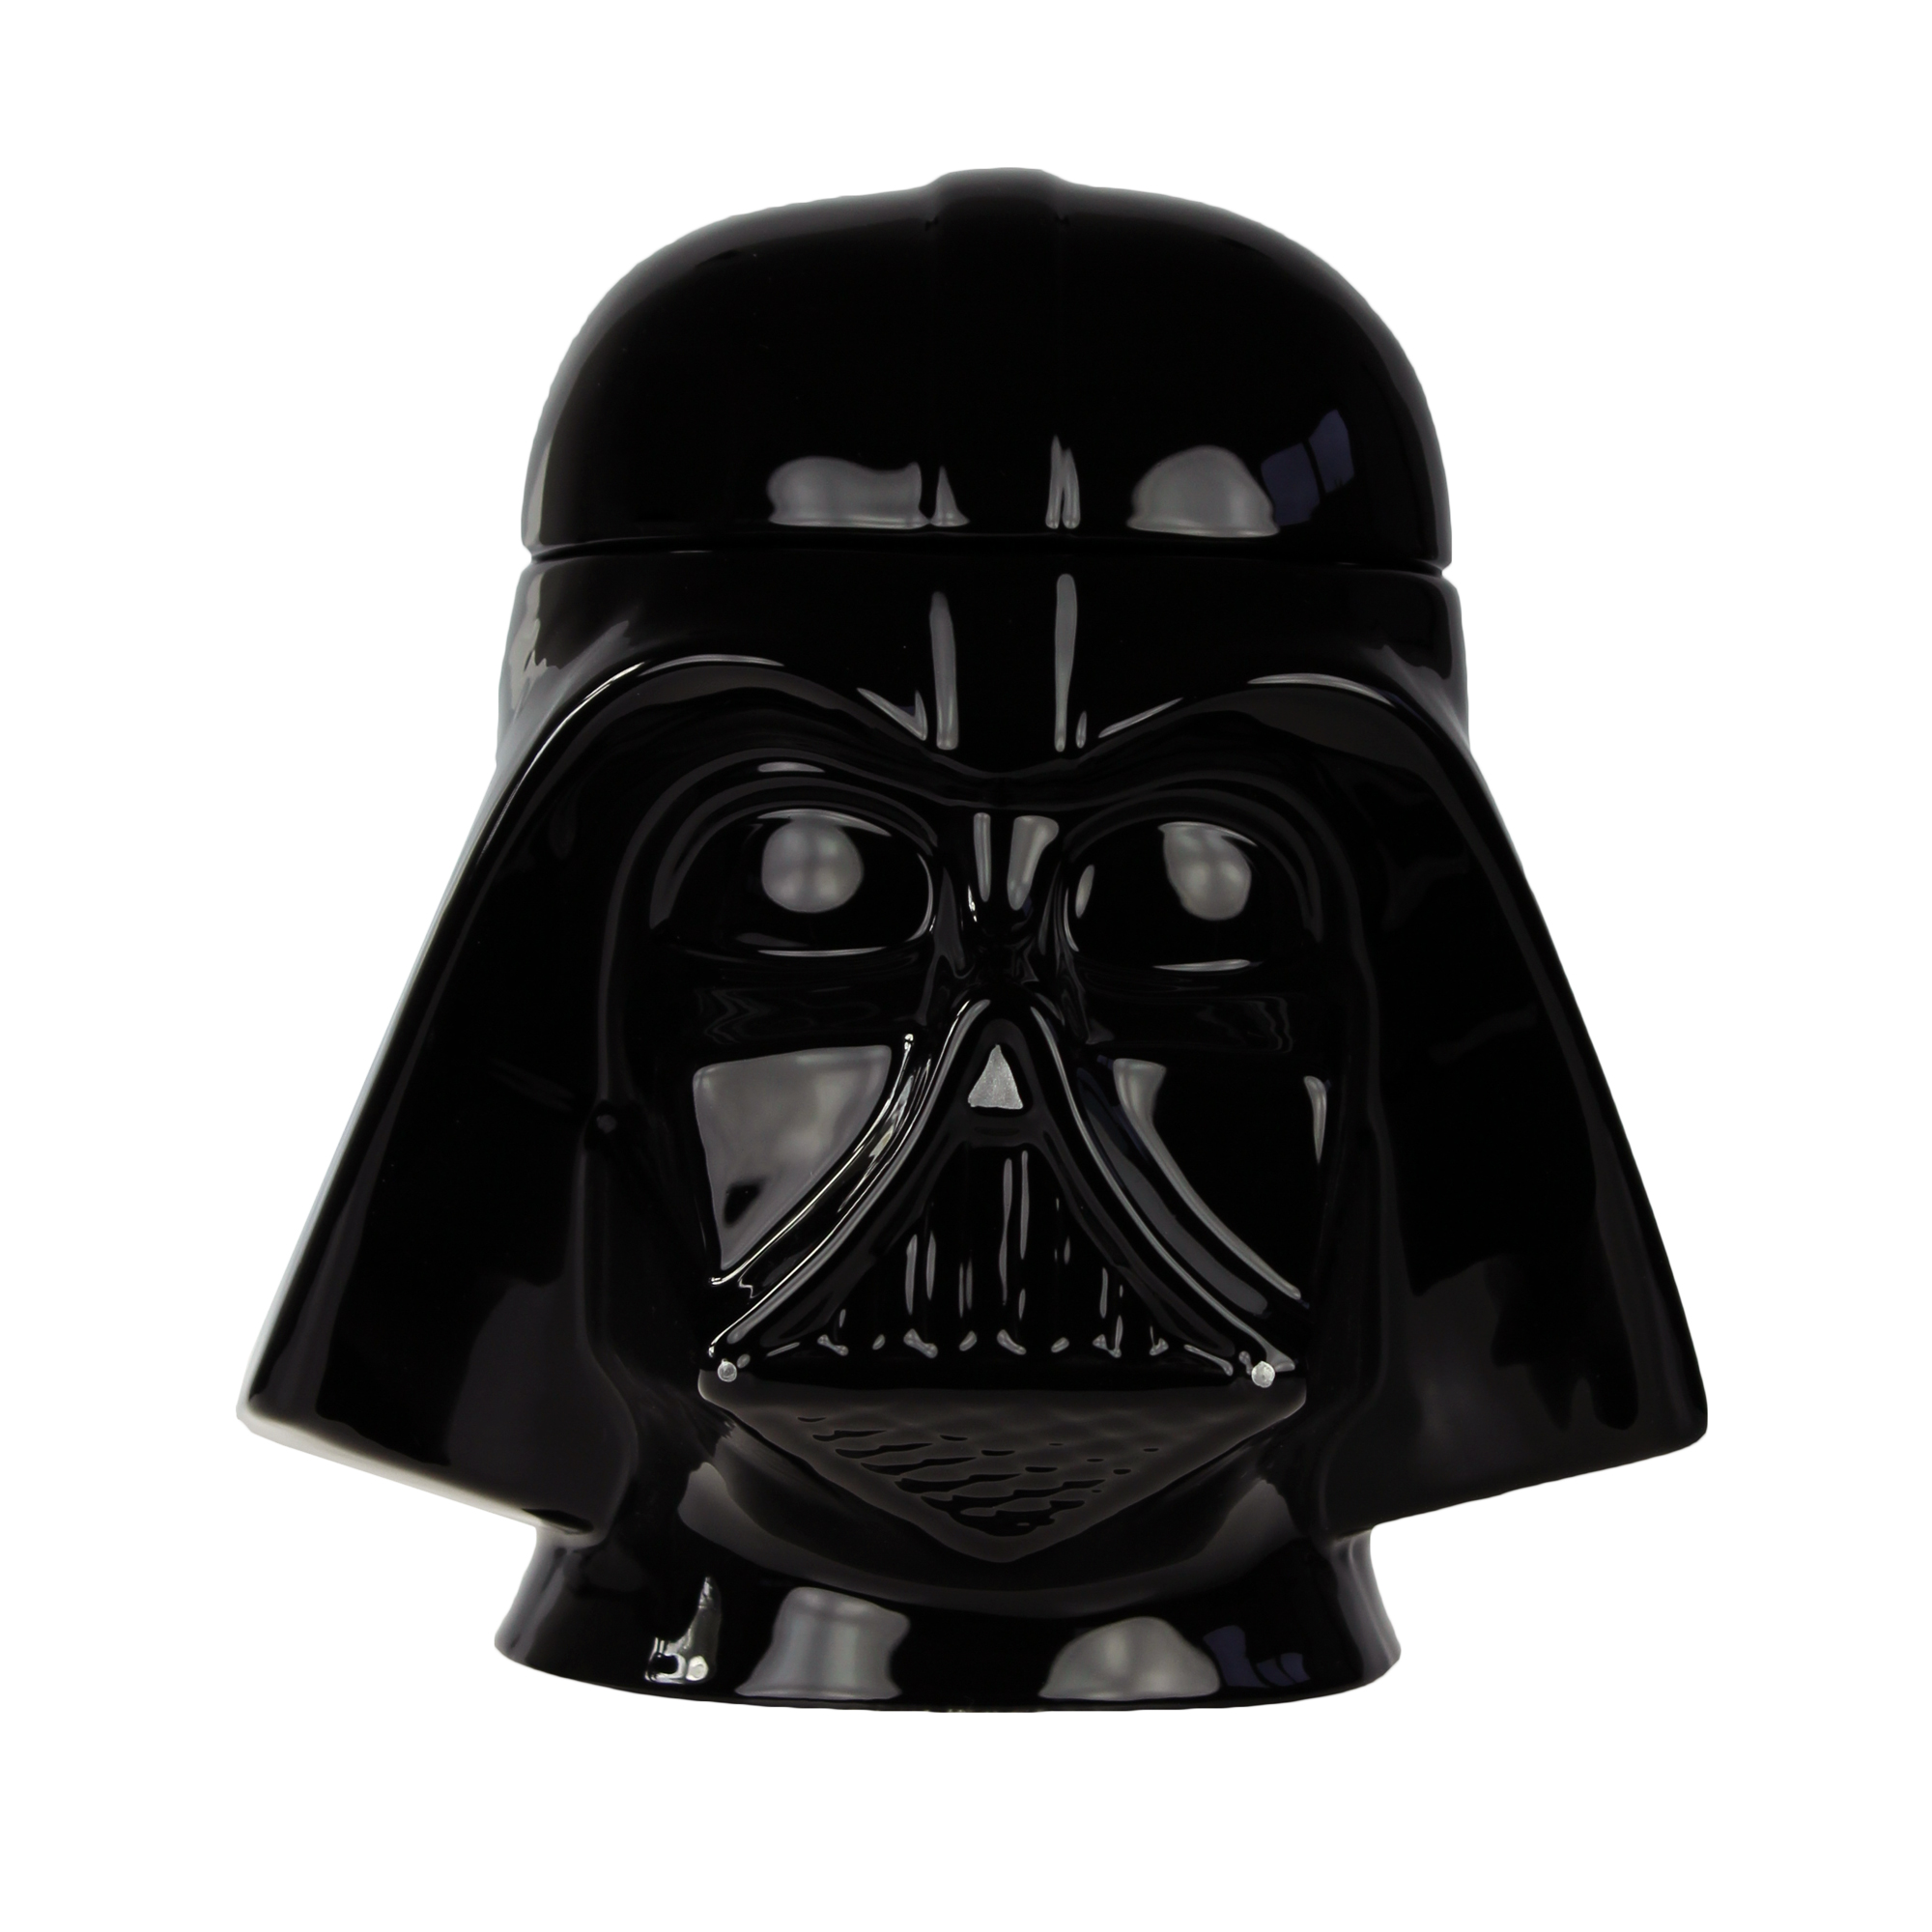 Star Wars Keramik Keksdose - Darth Vader 3280 - 3